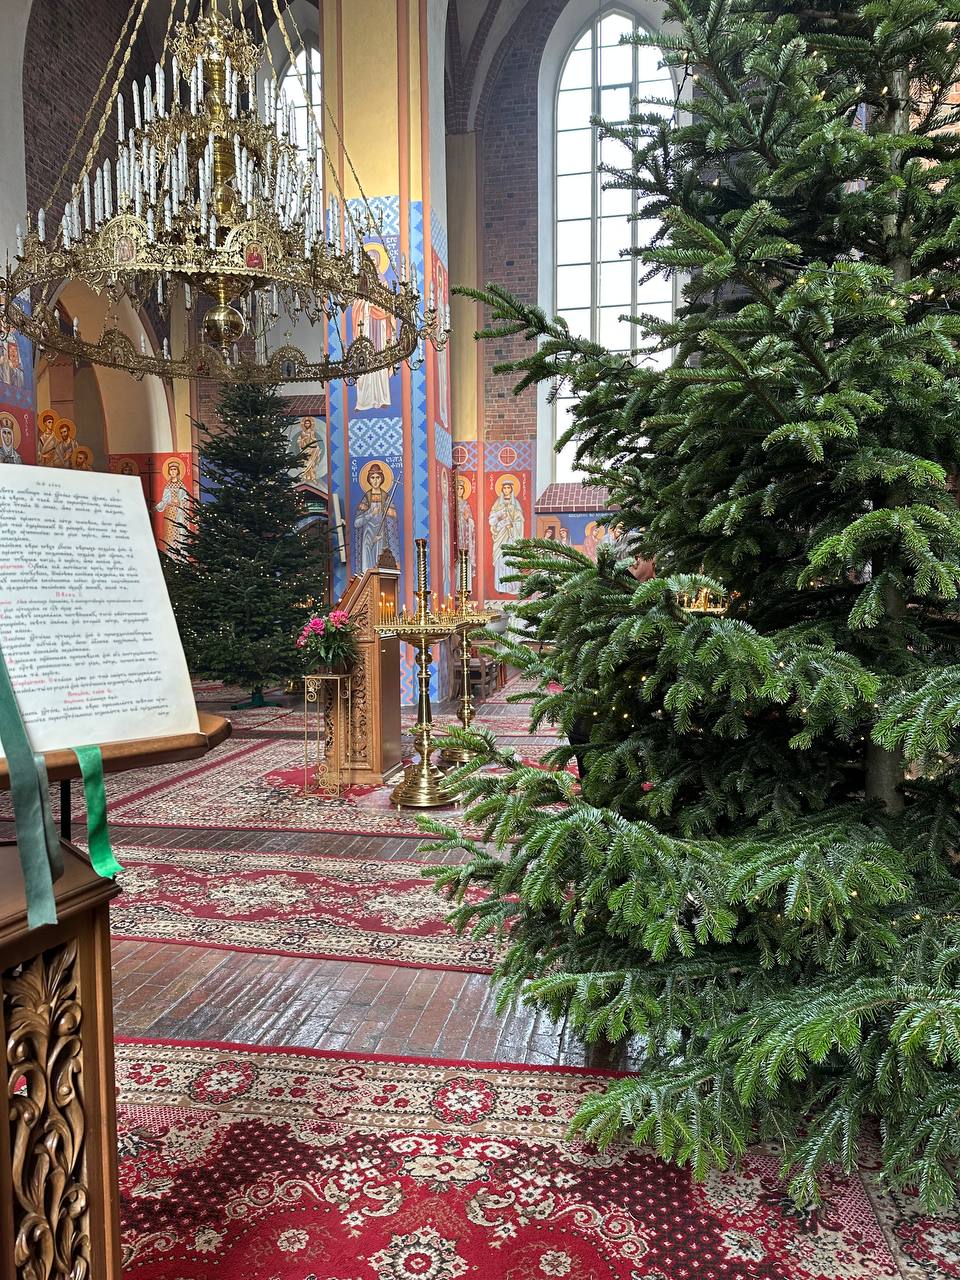 Польская православная церковь во Вроцлаве: эксклюзивный фоторепортаж изнутри - фото 5